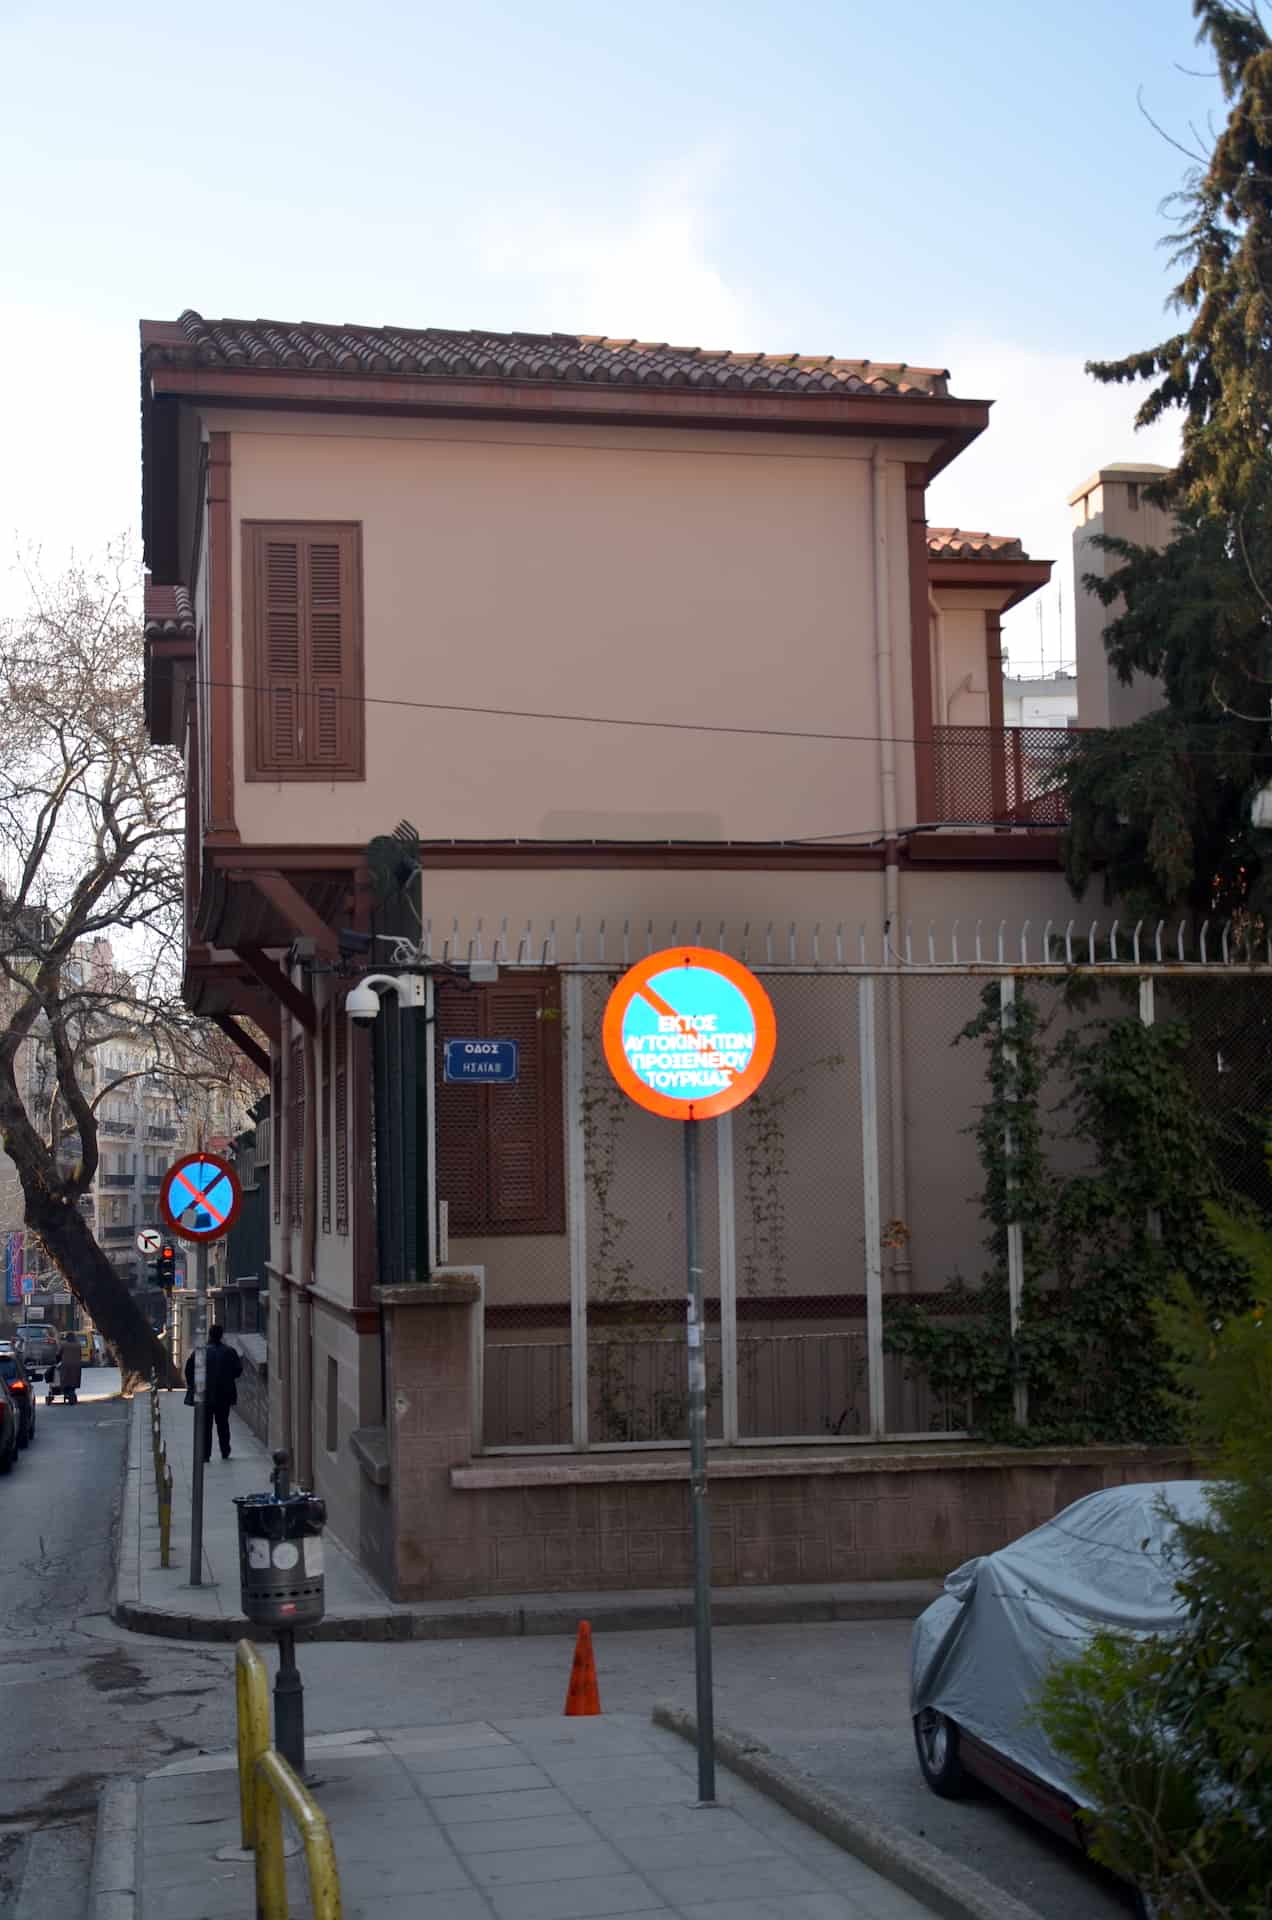 Atatürk Museum in Thessaloniki, Greece